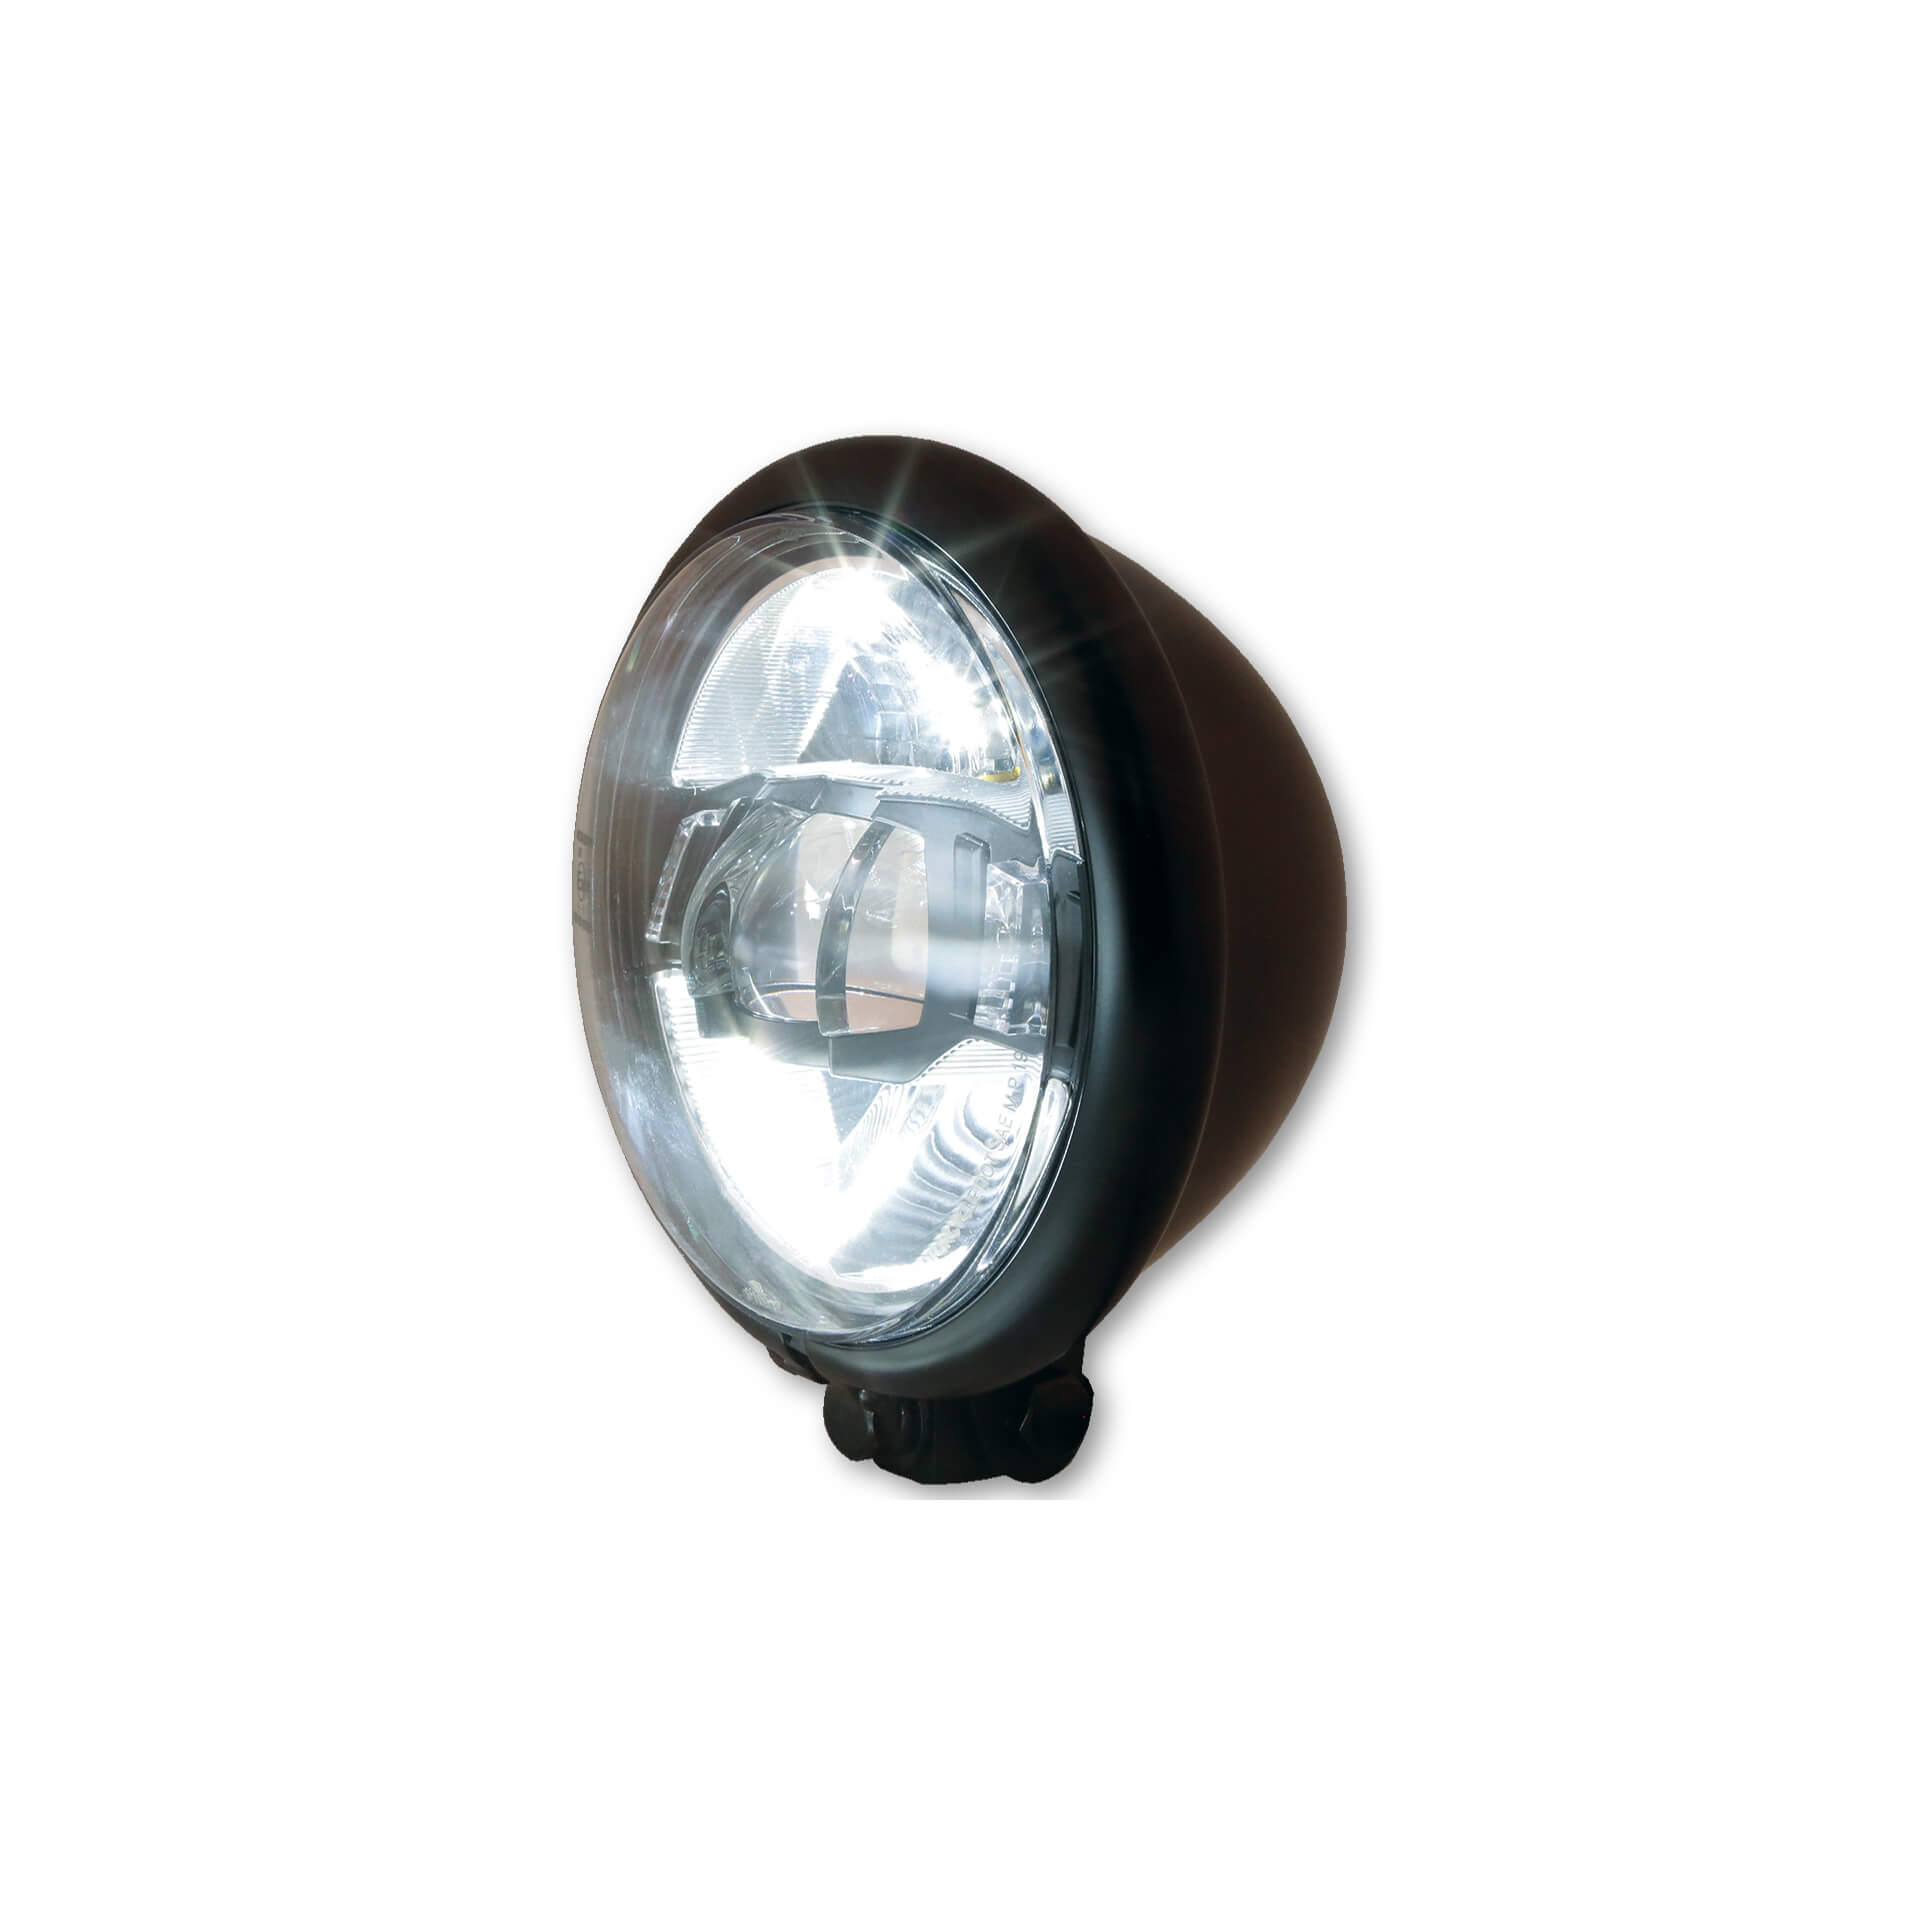 highsider BATES STYLE TYPE 10 5 3/4 inch LED headlight